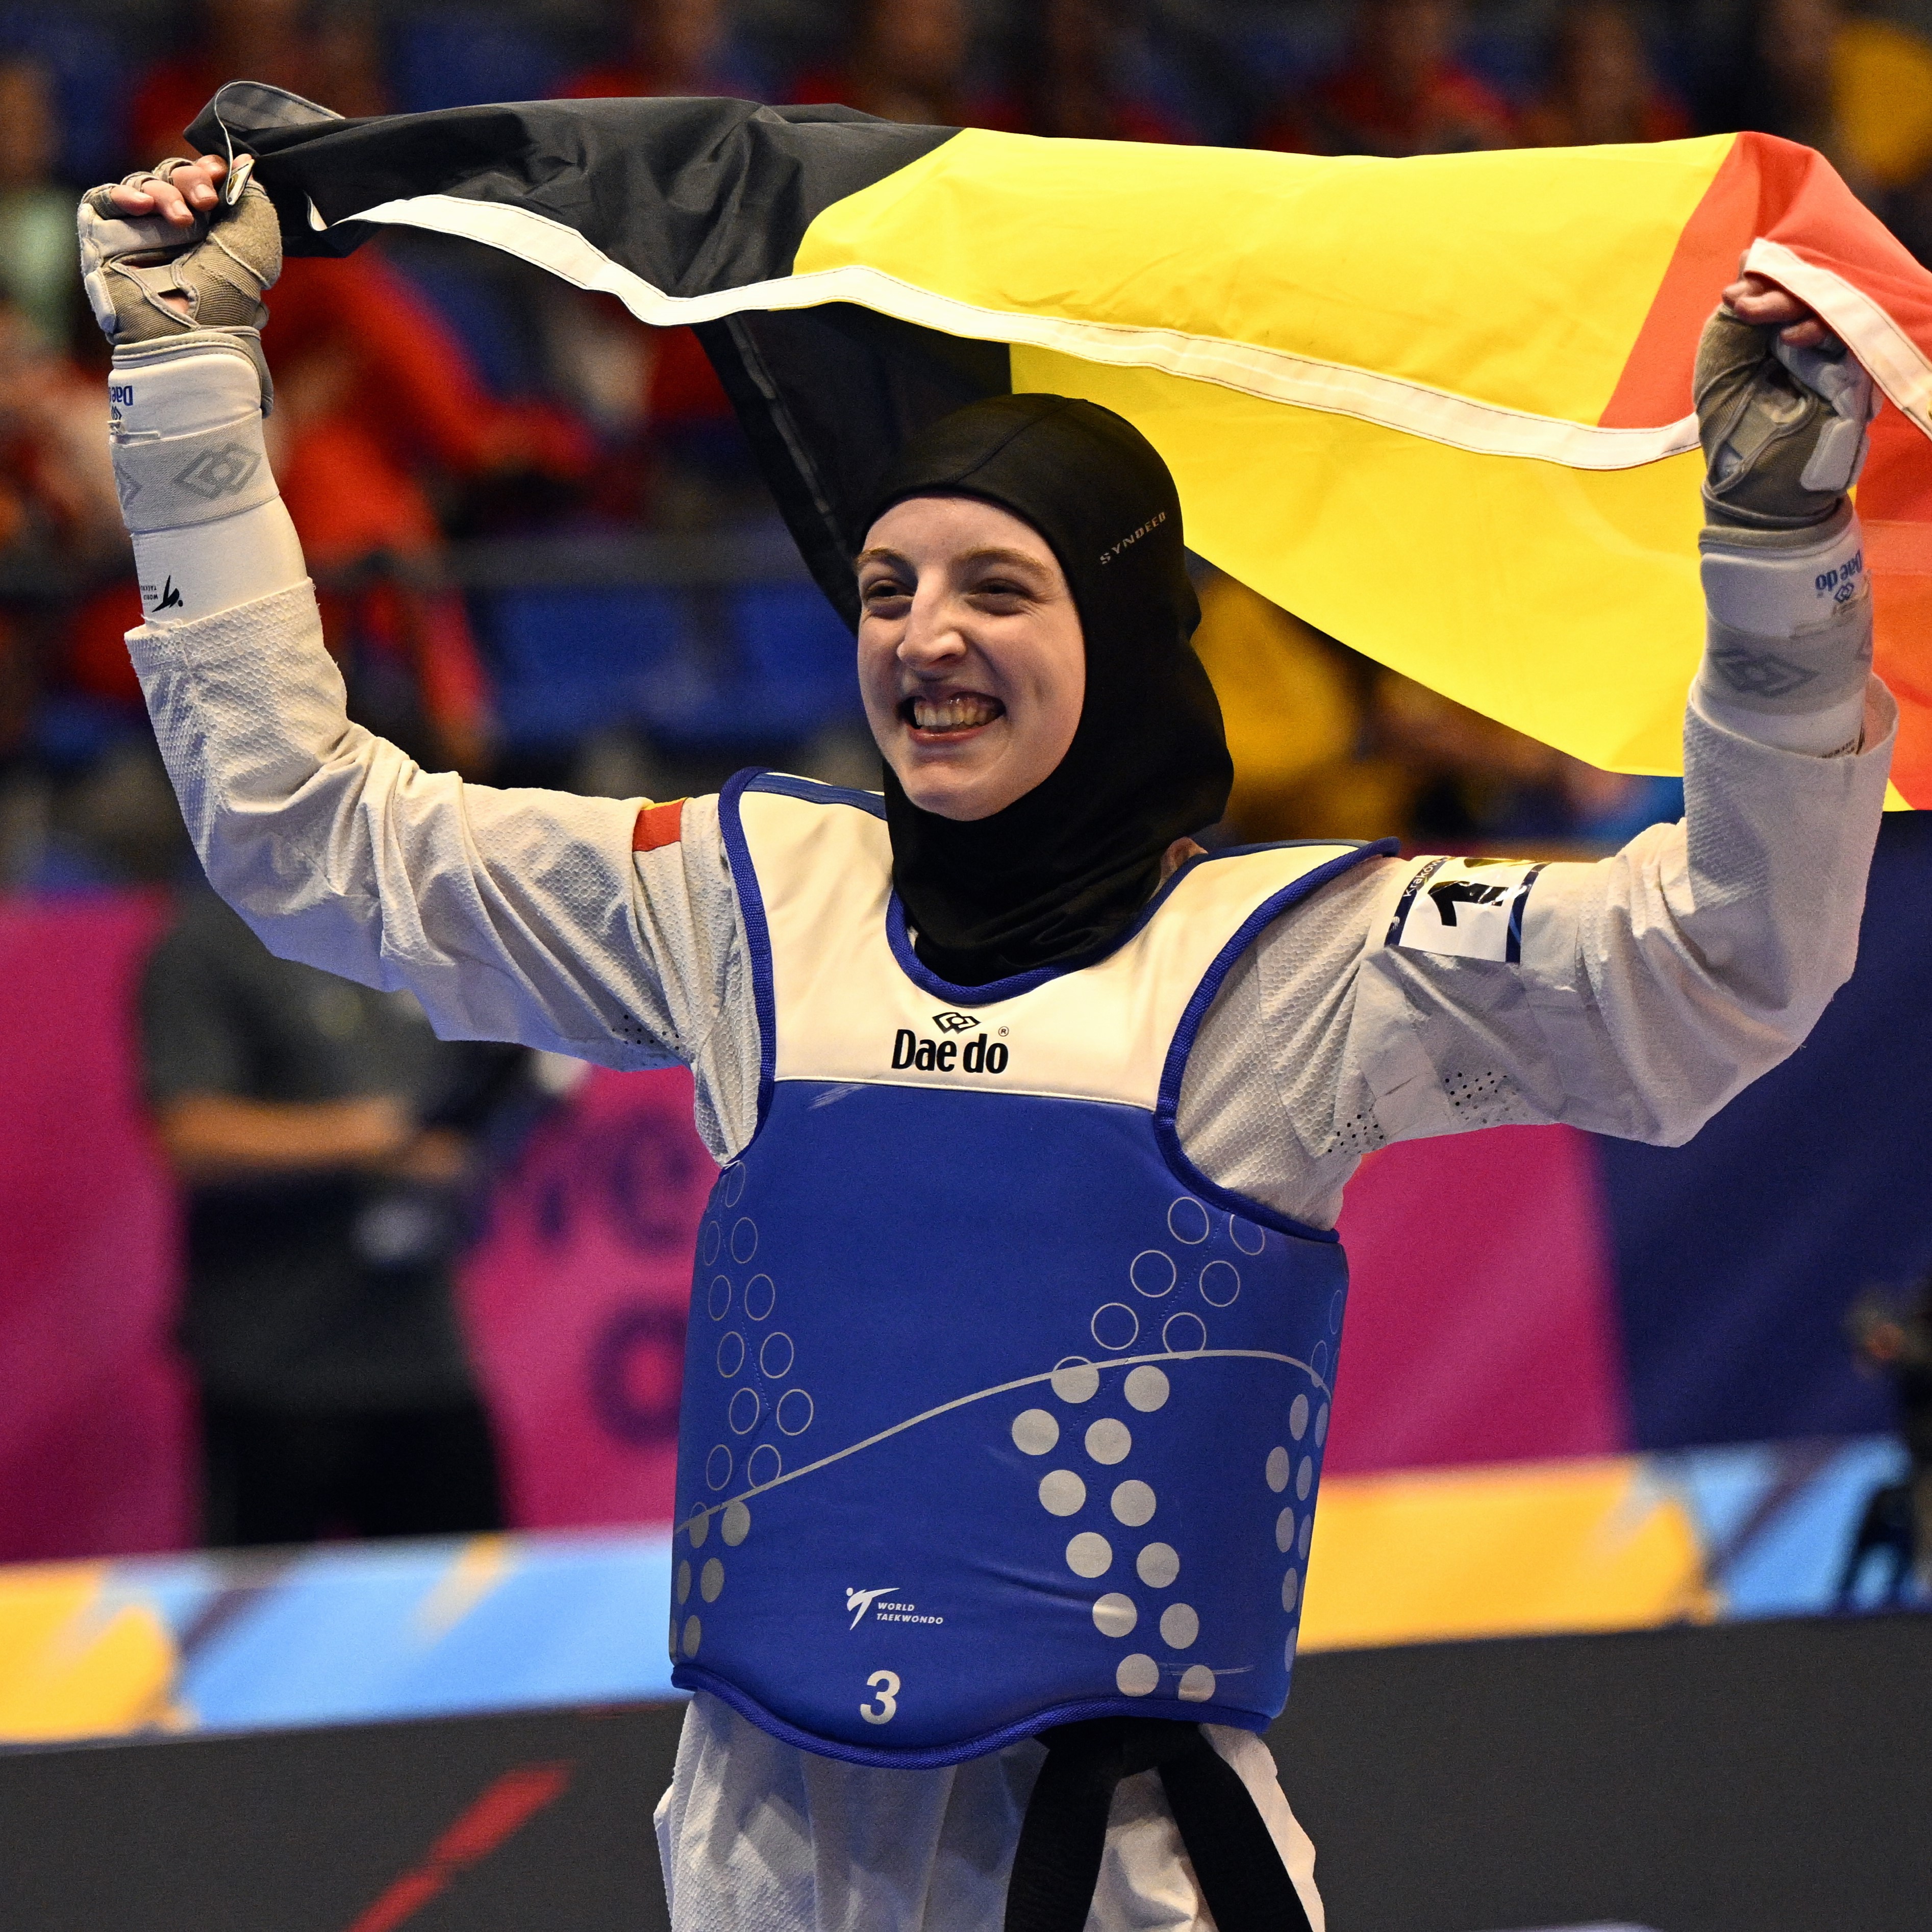 Sarah Chaari est sacrée championne d'Europe!